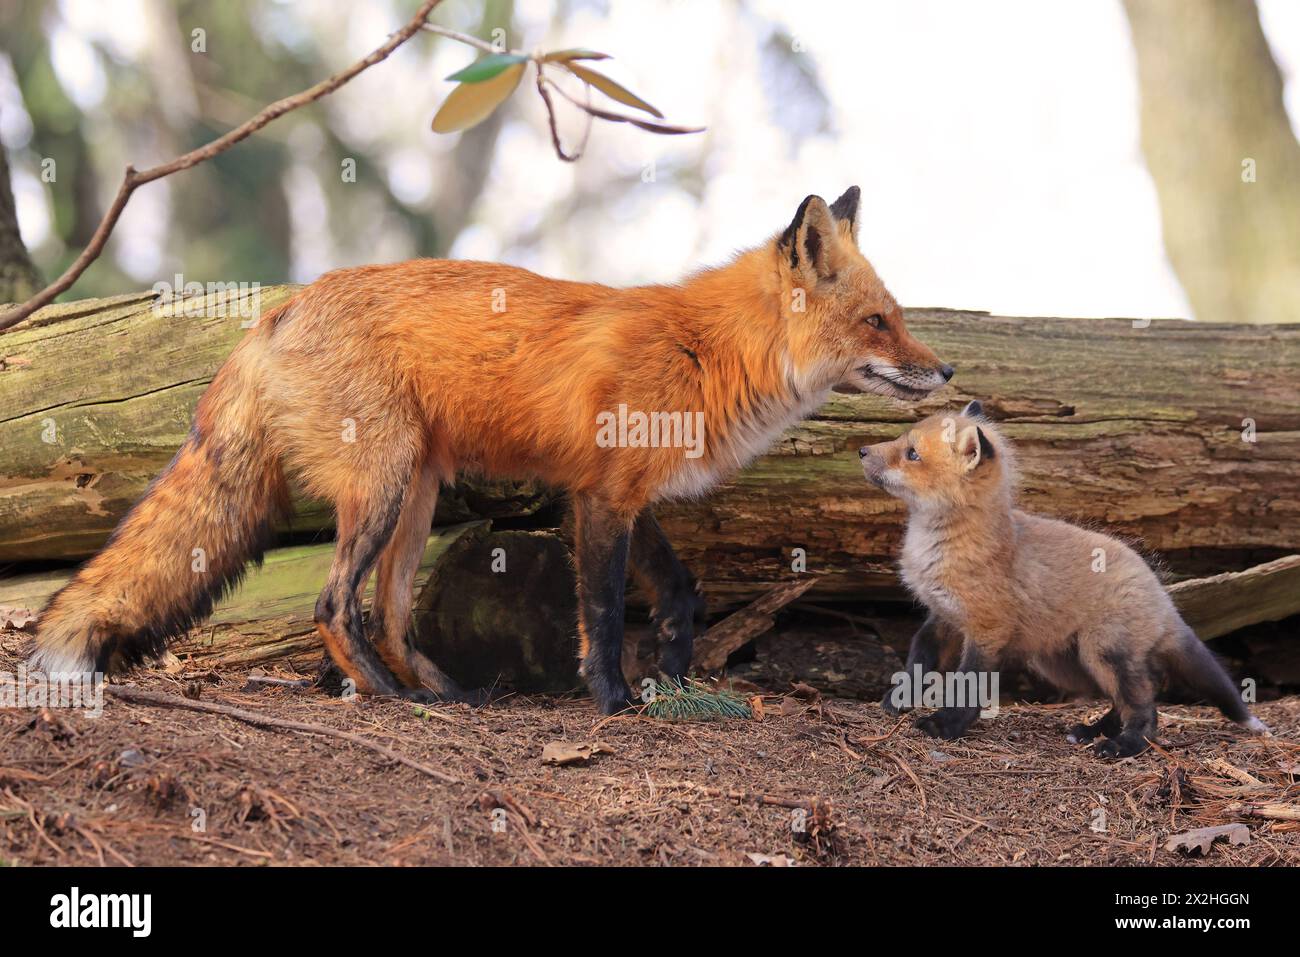 Portrait de mère renard roux et son bébé dans la forêt, Canada Banque D'Images